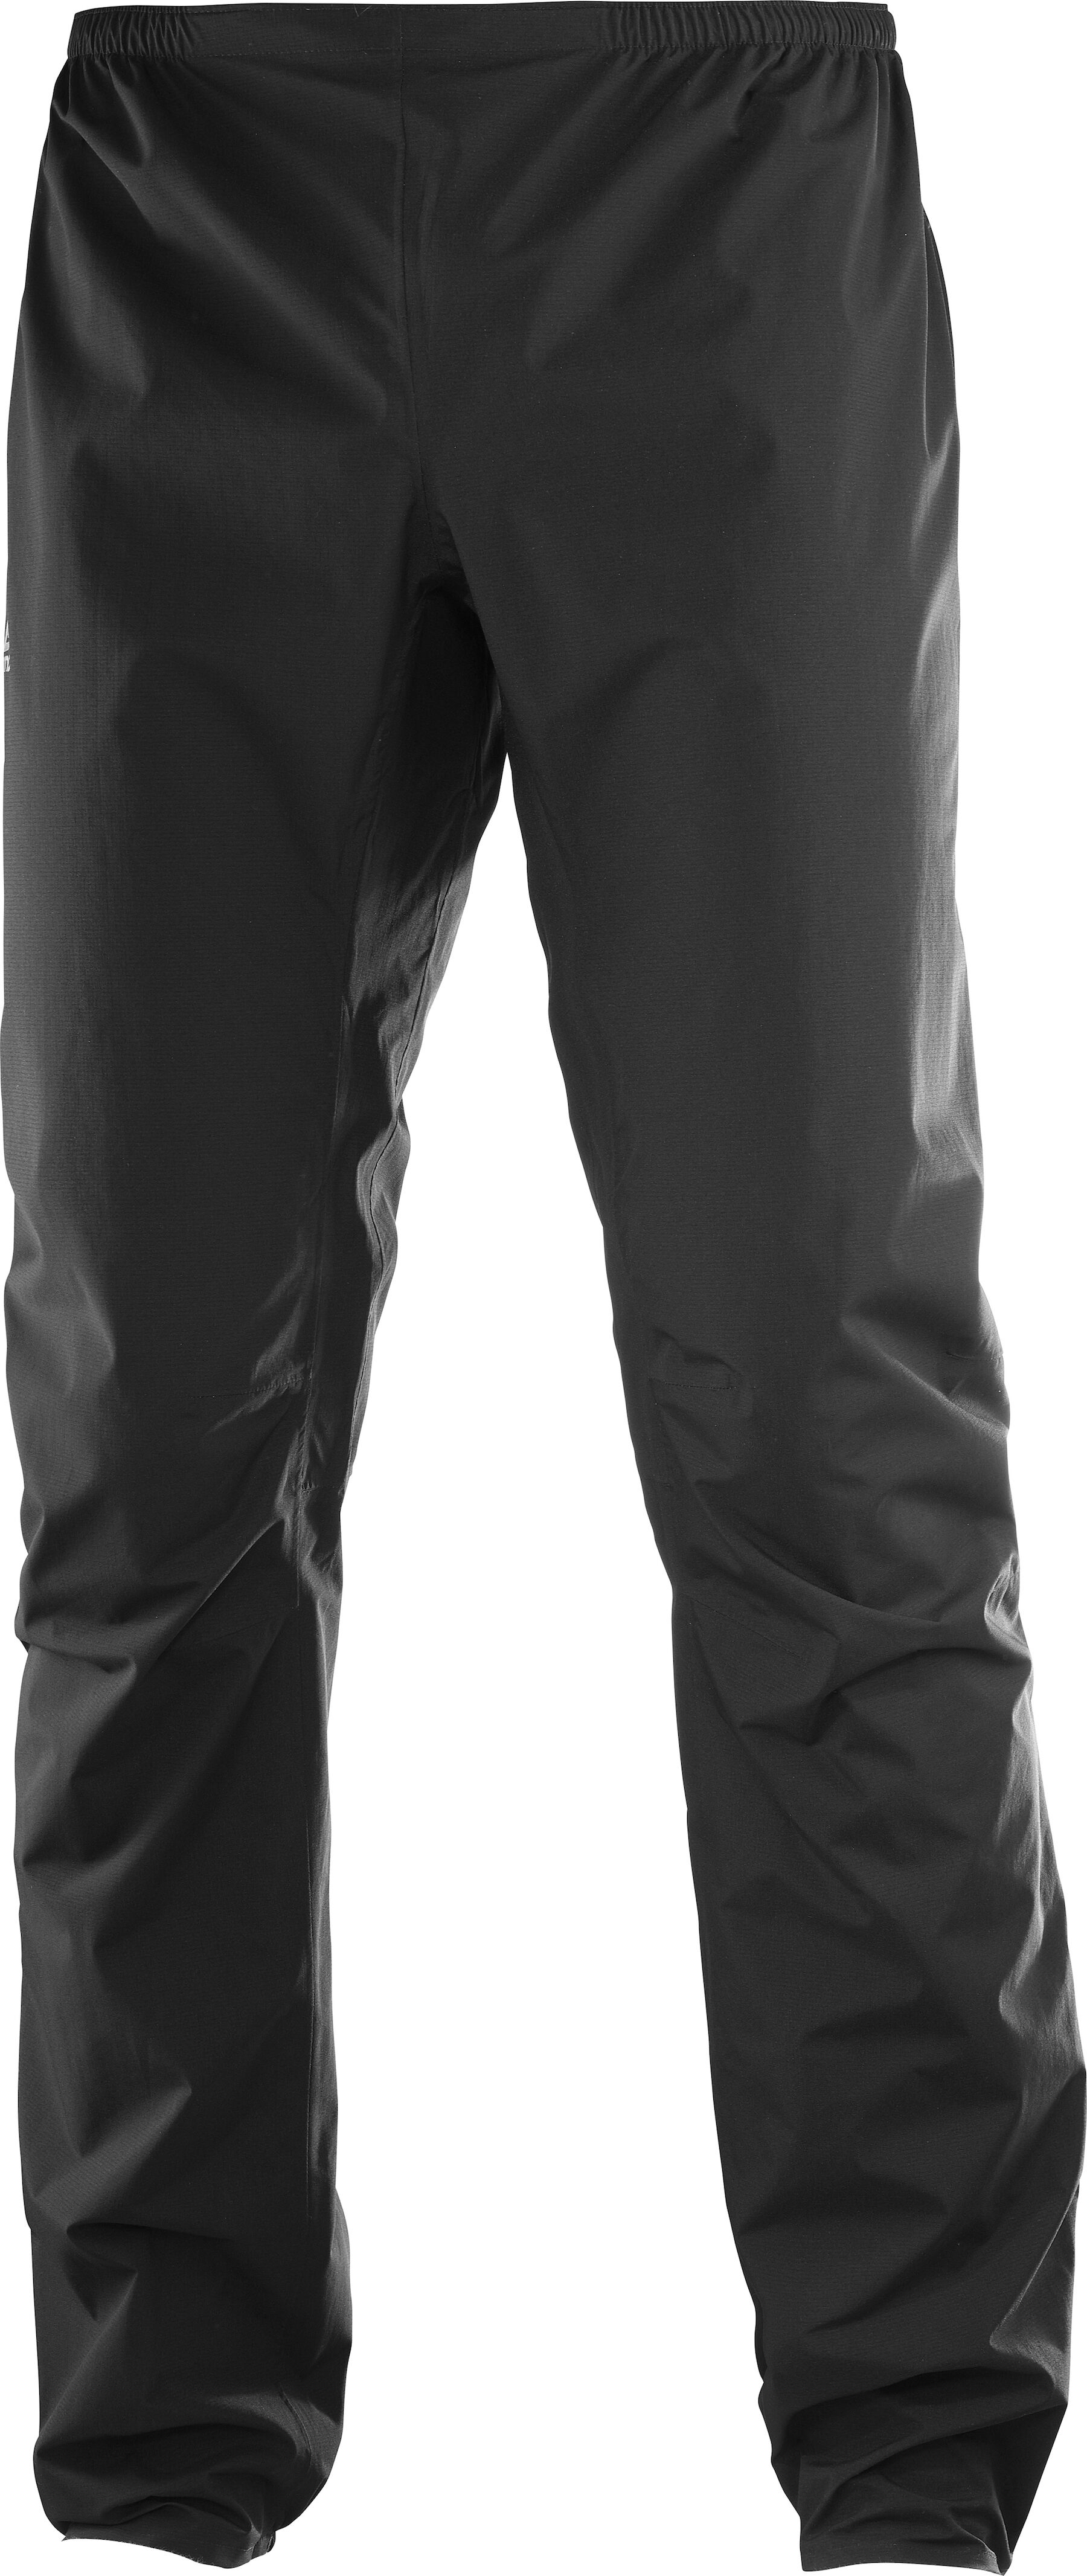 Salomon - Bonatti WP Pant - Pantaloni impermeabili